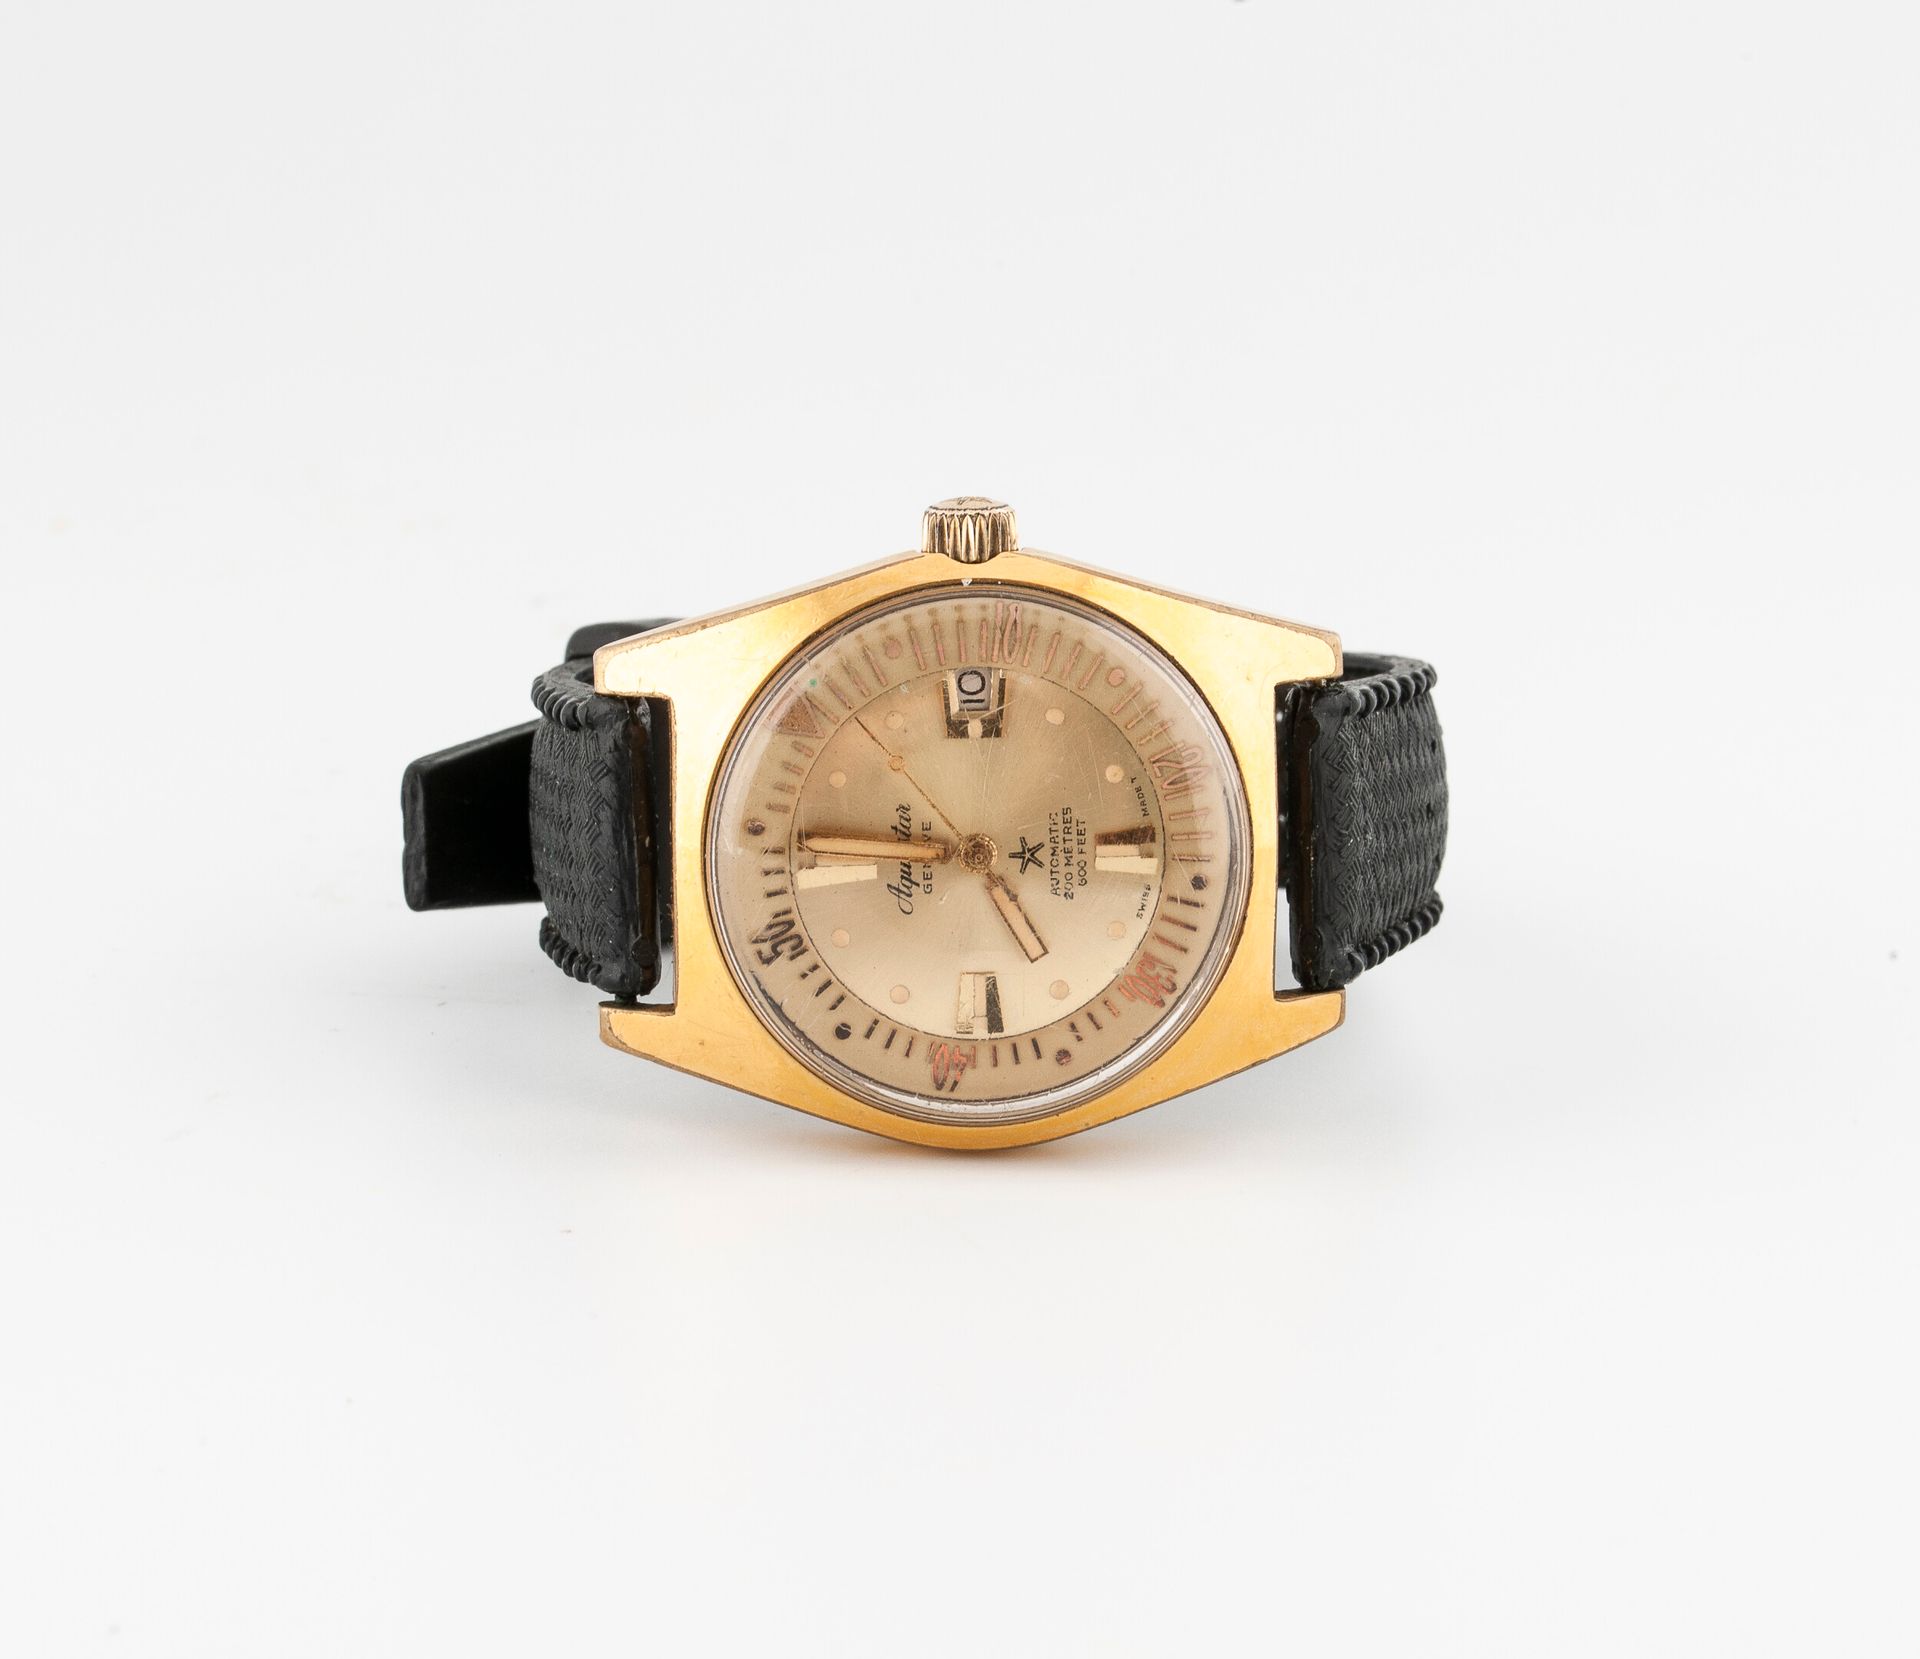 AQUASTER Genève, Diver 63 Armbanduhr für Männer.

Tonneau-Gehäuse aus Stahl und &hellip;